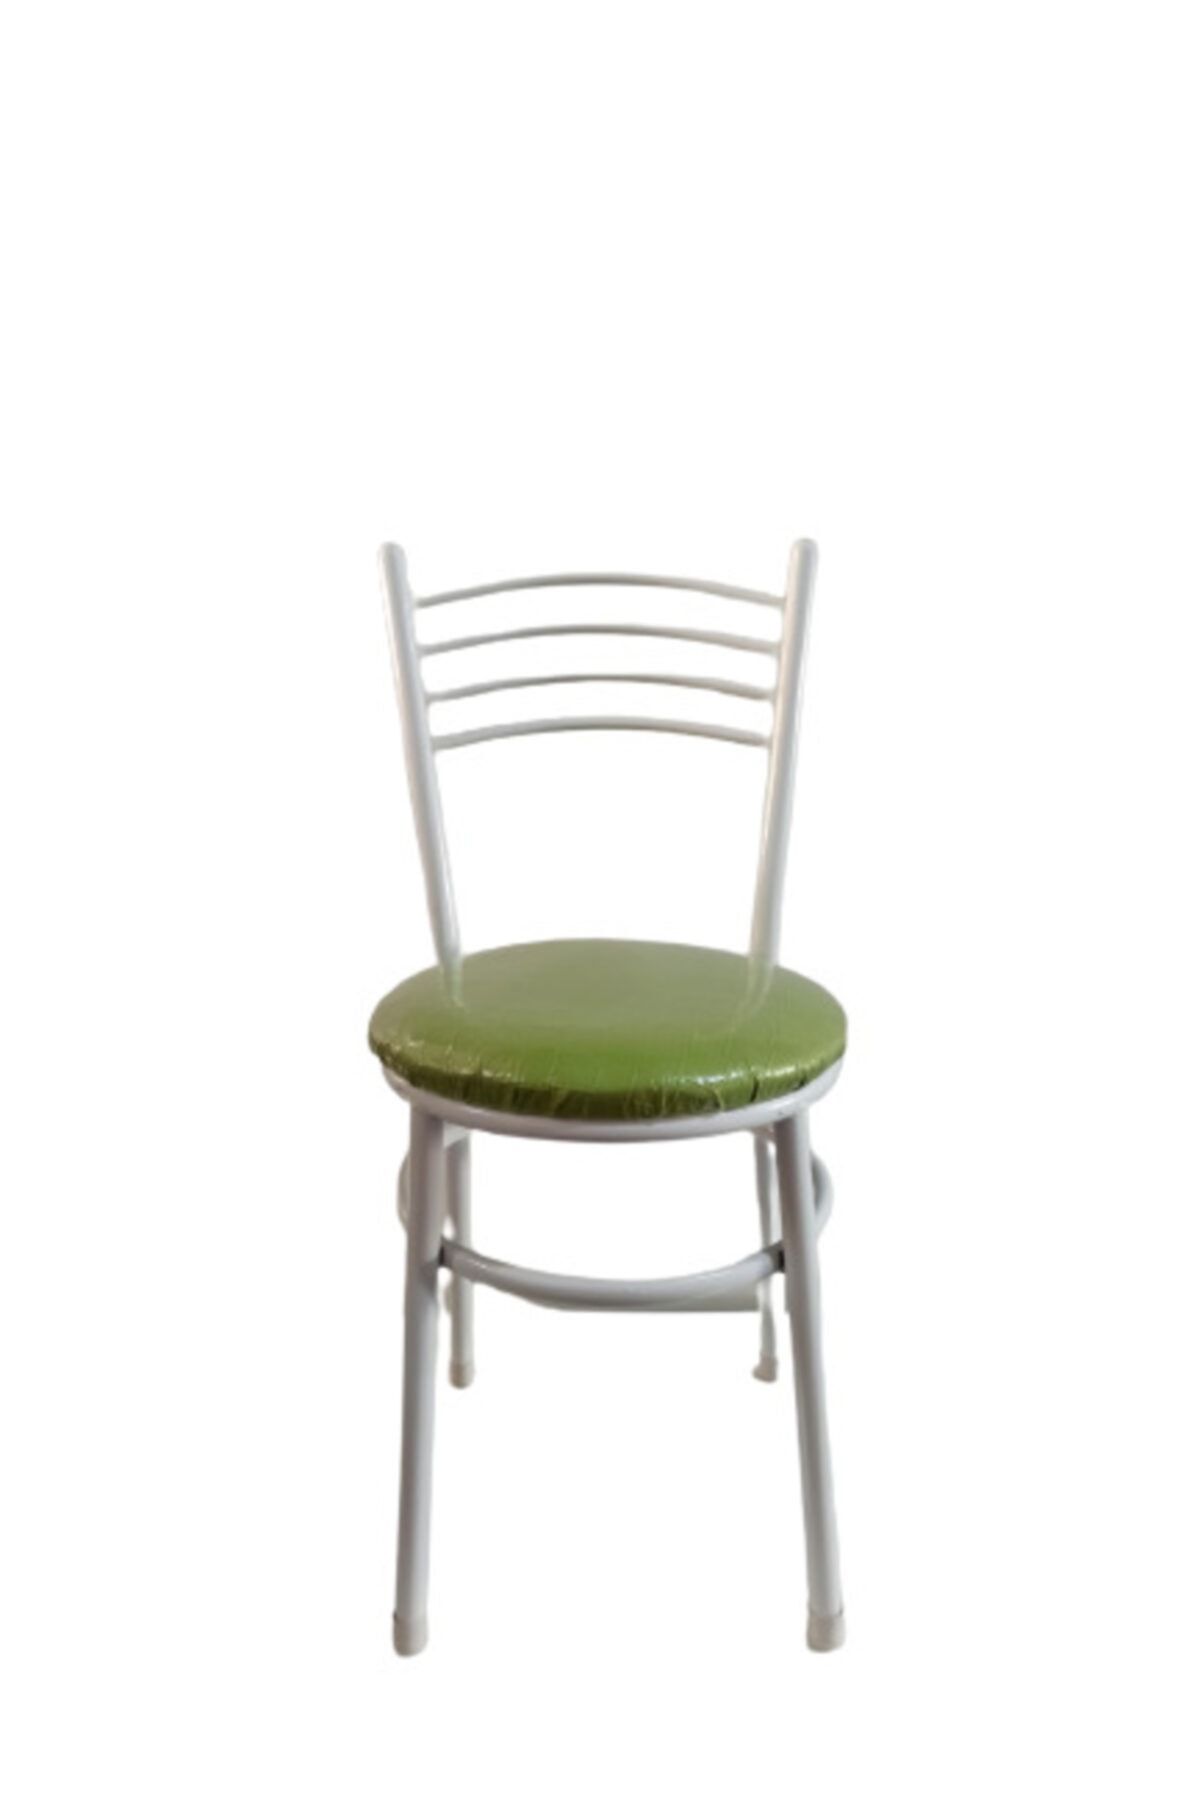 yılmaz masacılık Tatlı 4 Adet Yeşil Mutfak Bahçe Sandalyesi